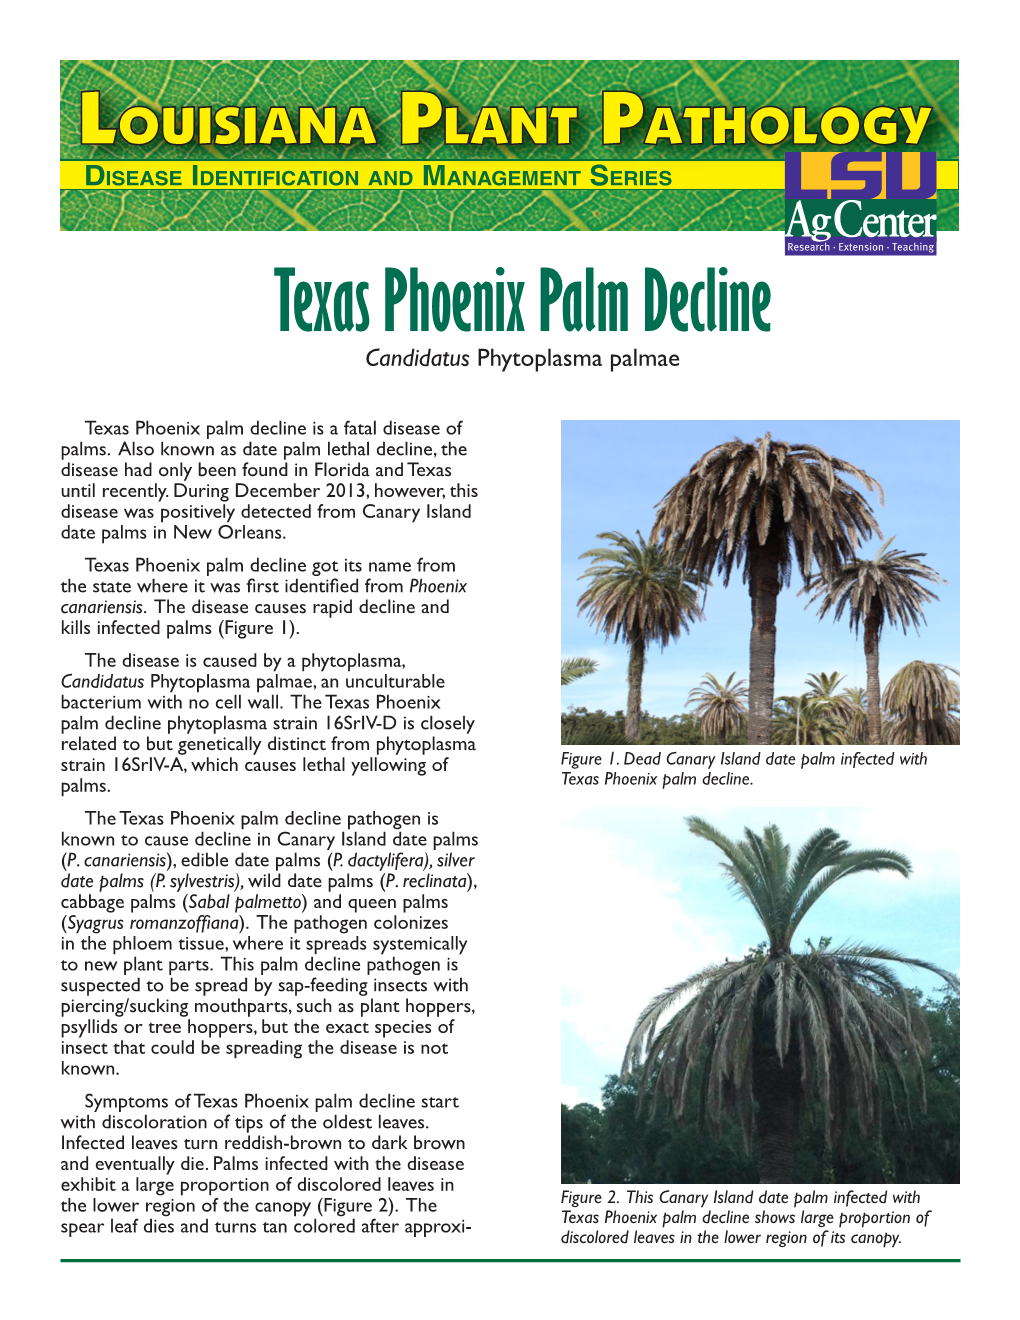 Texas Phoenix Palm Decline Laplantpath Revpdf / 1.47